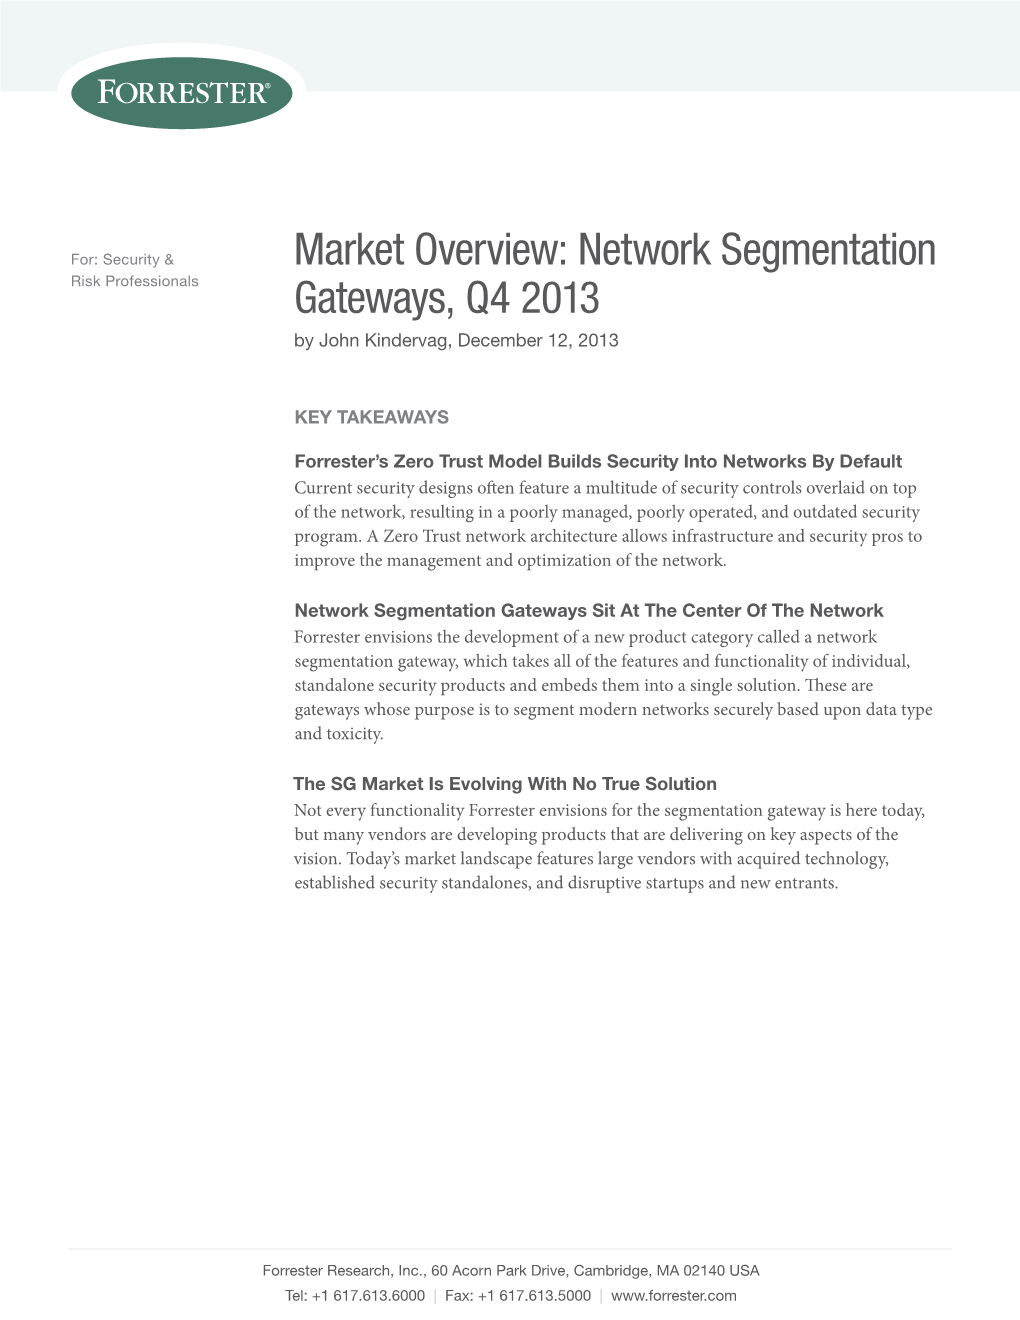 Market Overview: Network Segmentation Gateways, Q4 2013